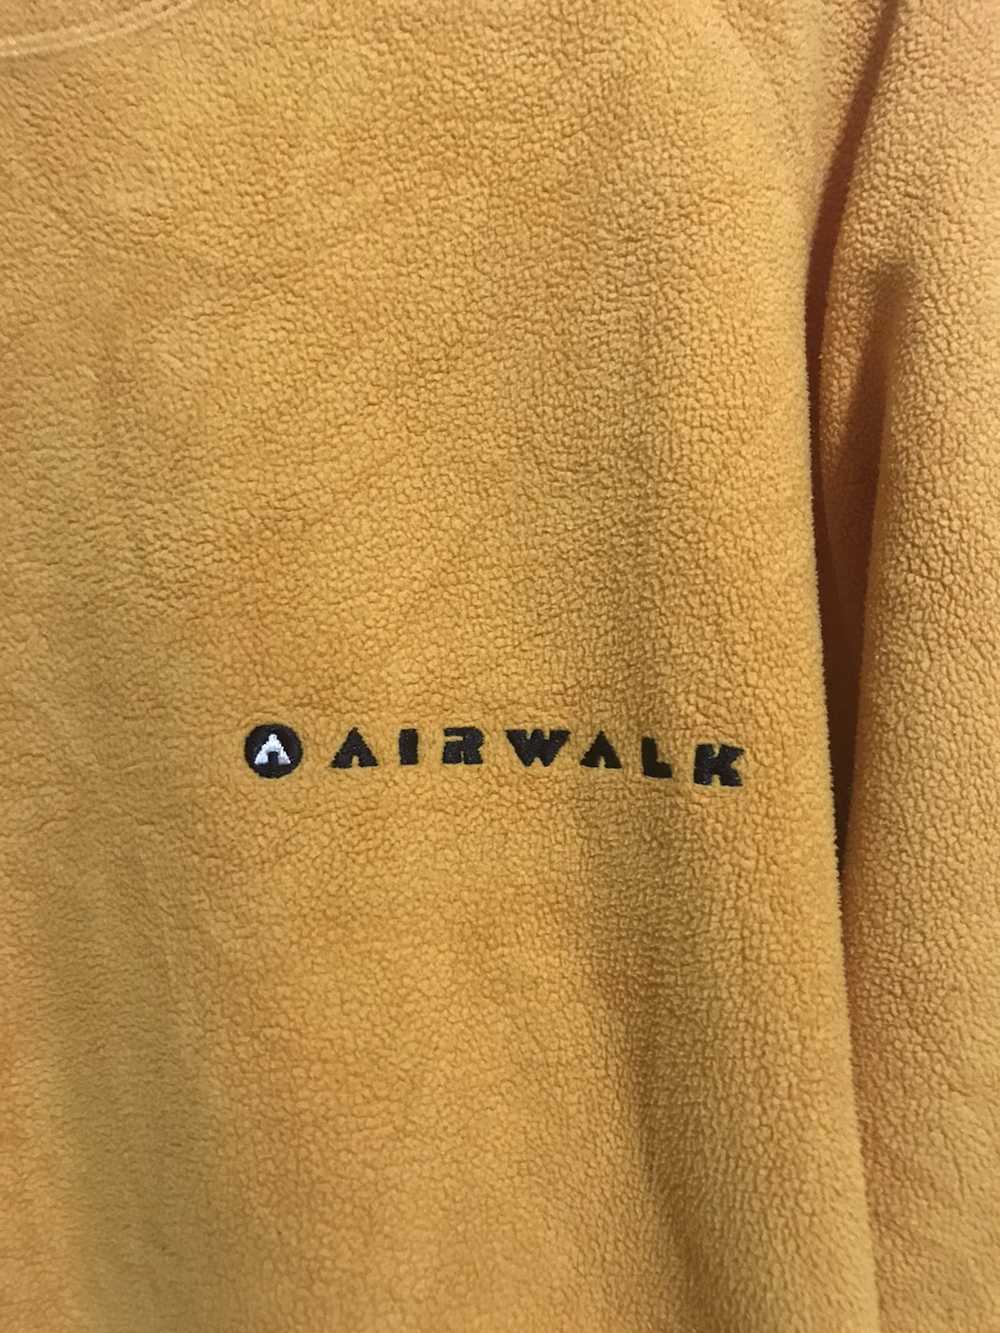 Airwalk × Streetwear × Vintage Vintage airwalk fl… - image 2